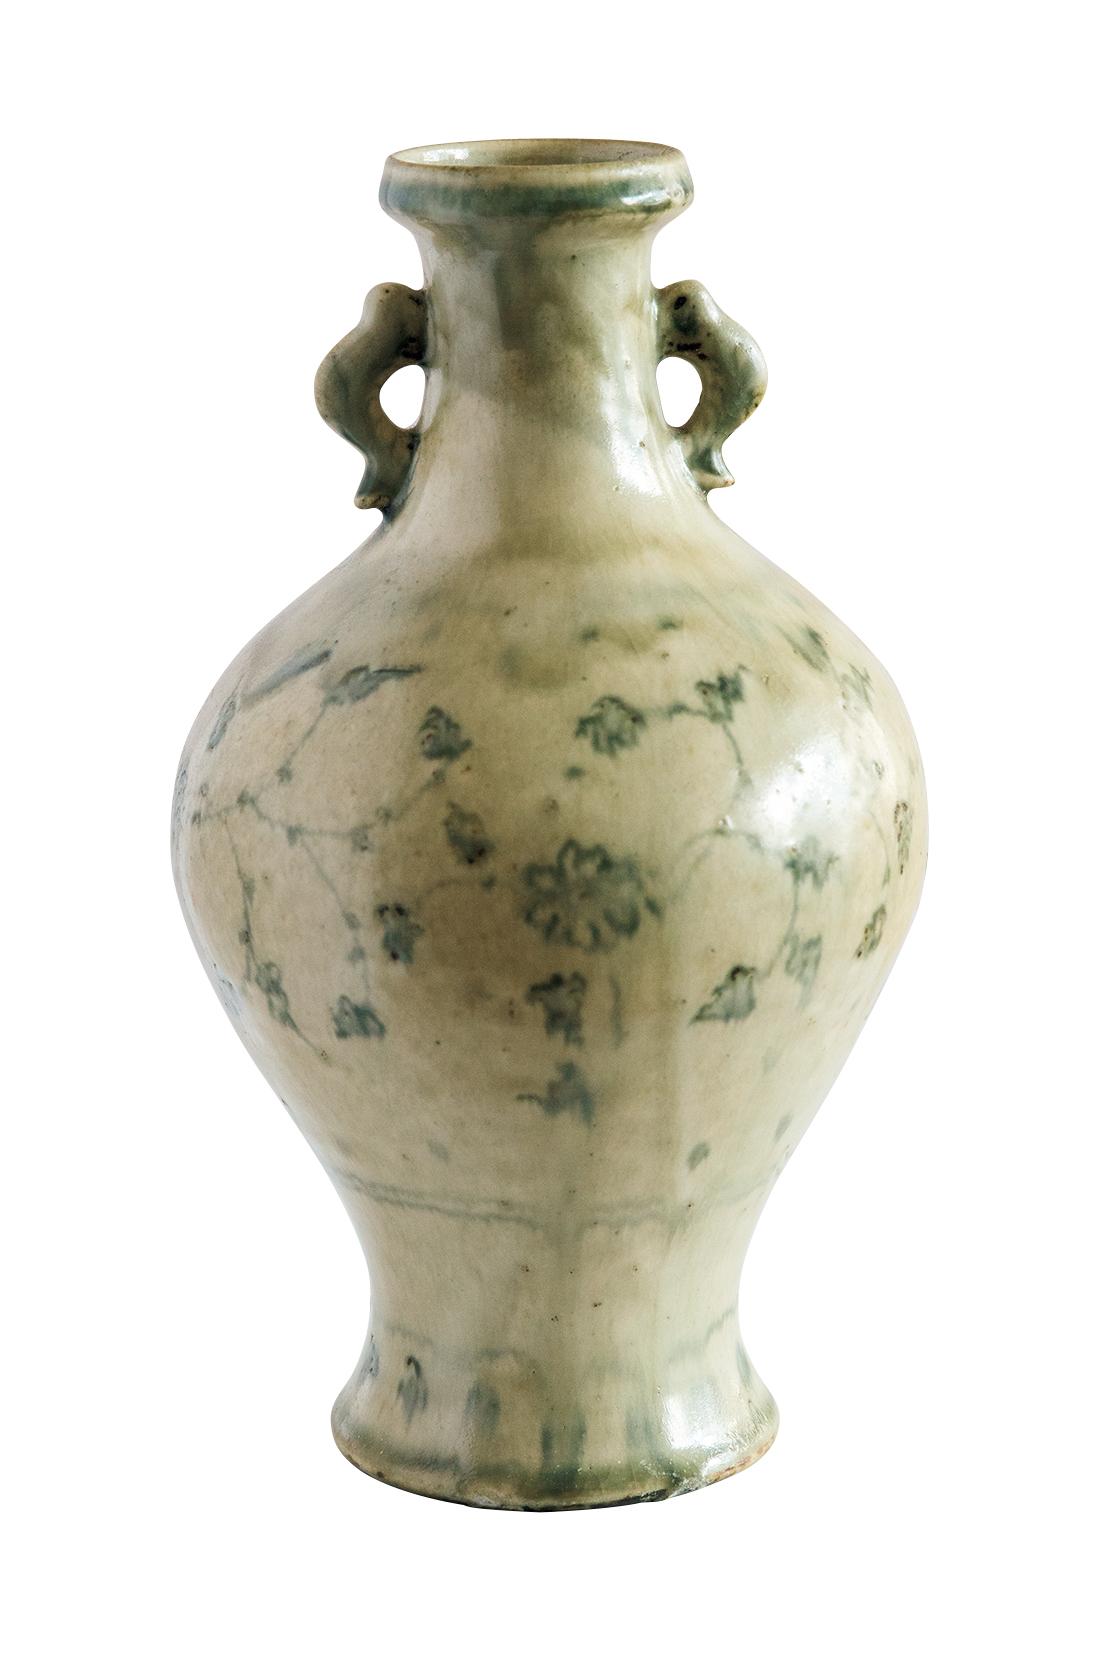 急逝した陶芸家・全日根が残した作品も。花器70,000円。